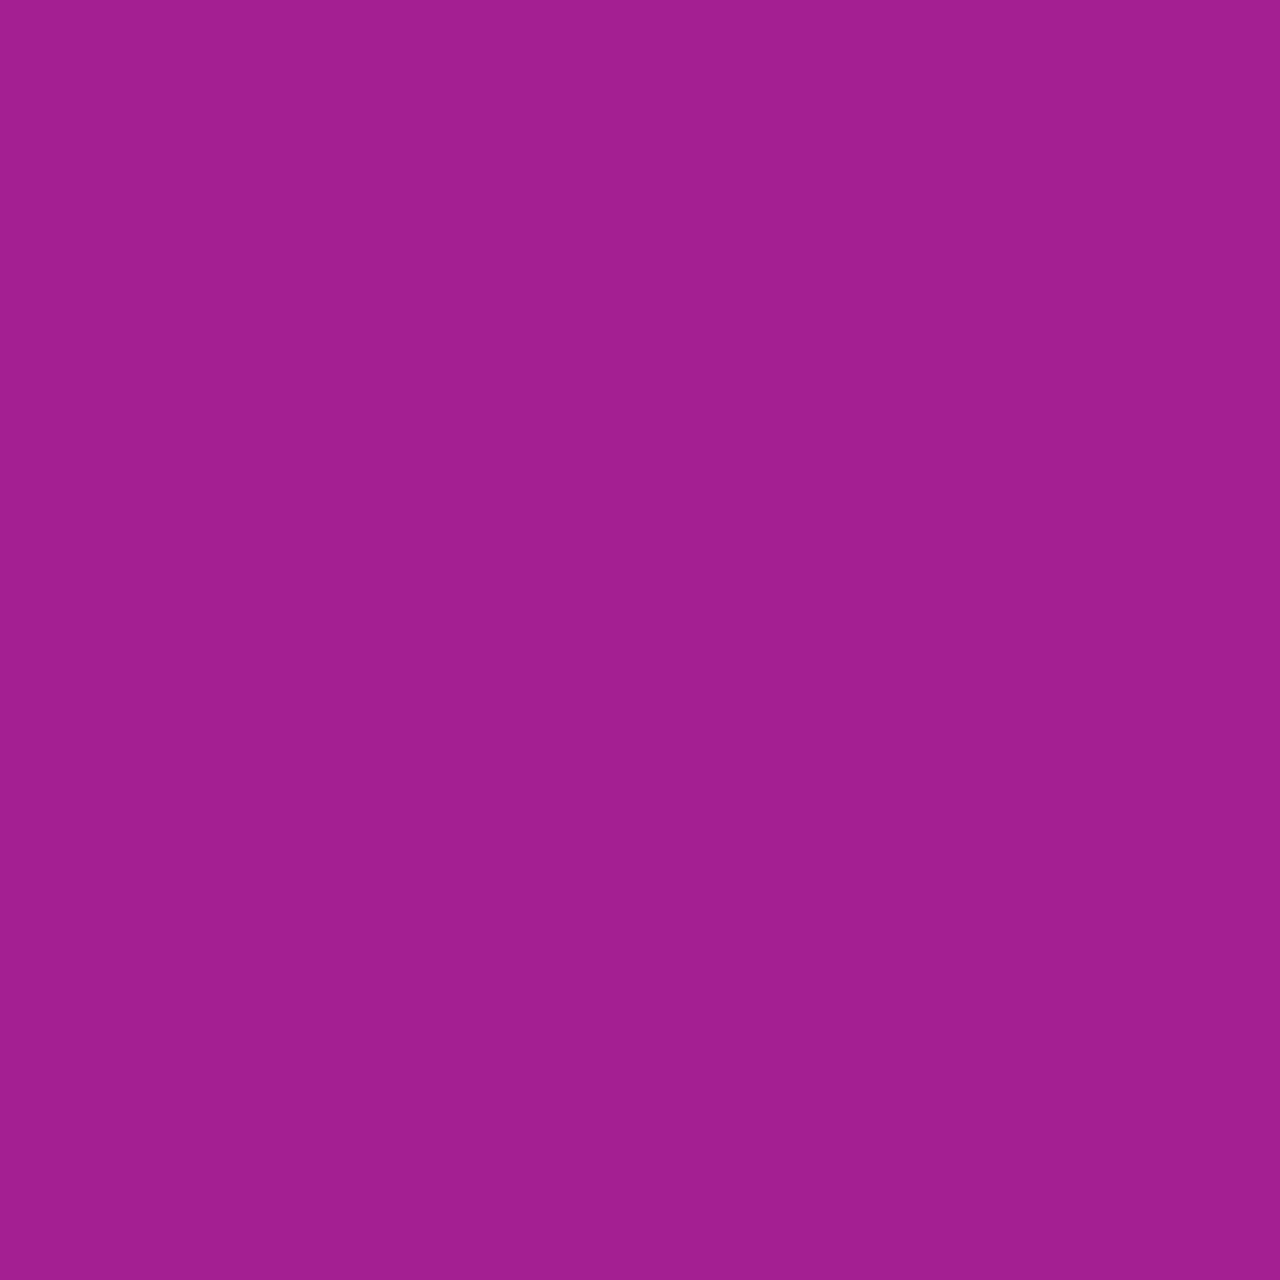 ANGELUS LEATHER PAINT - Neon - Paradise Purple Shoe Paint 